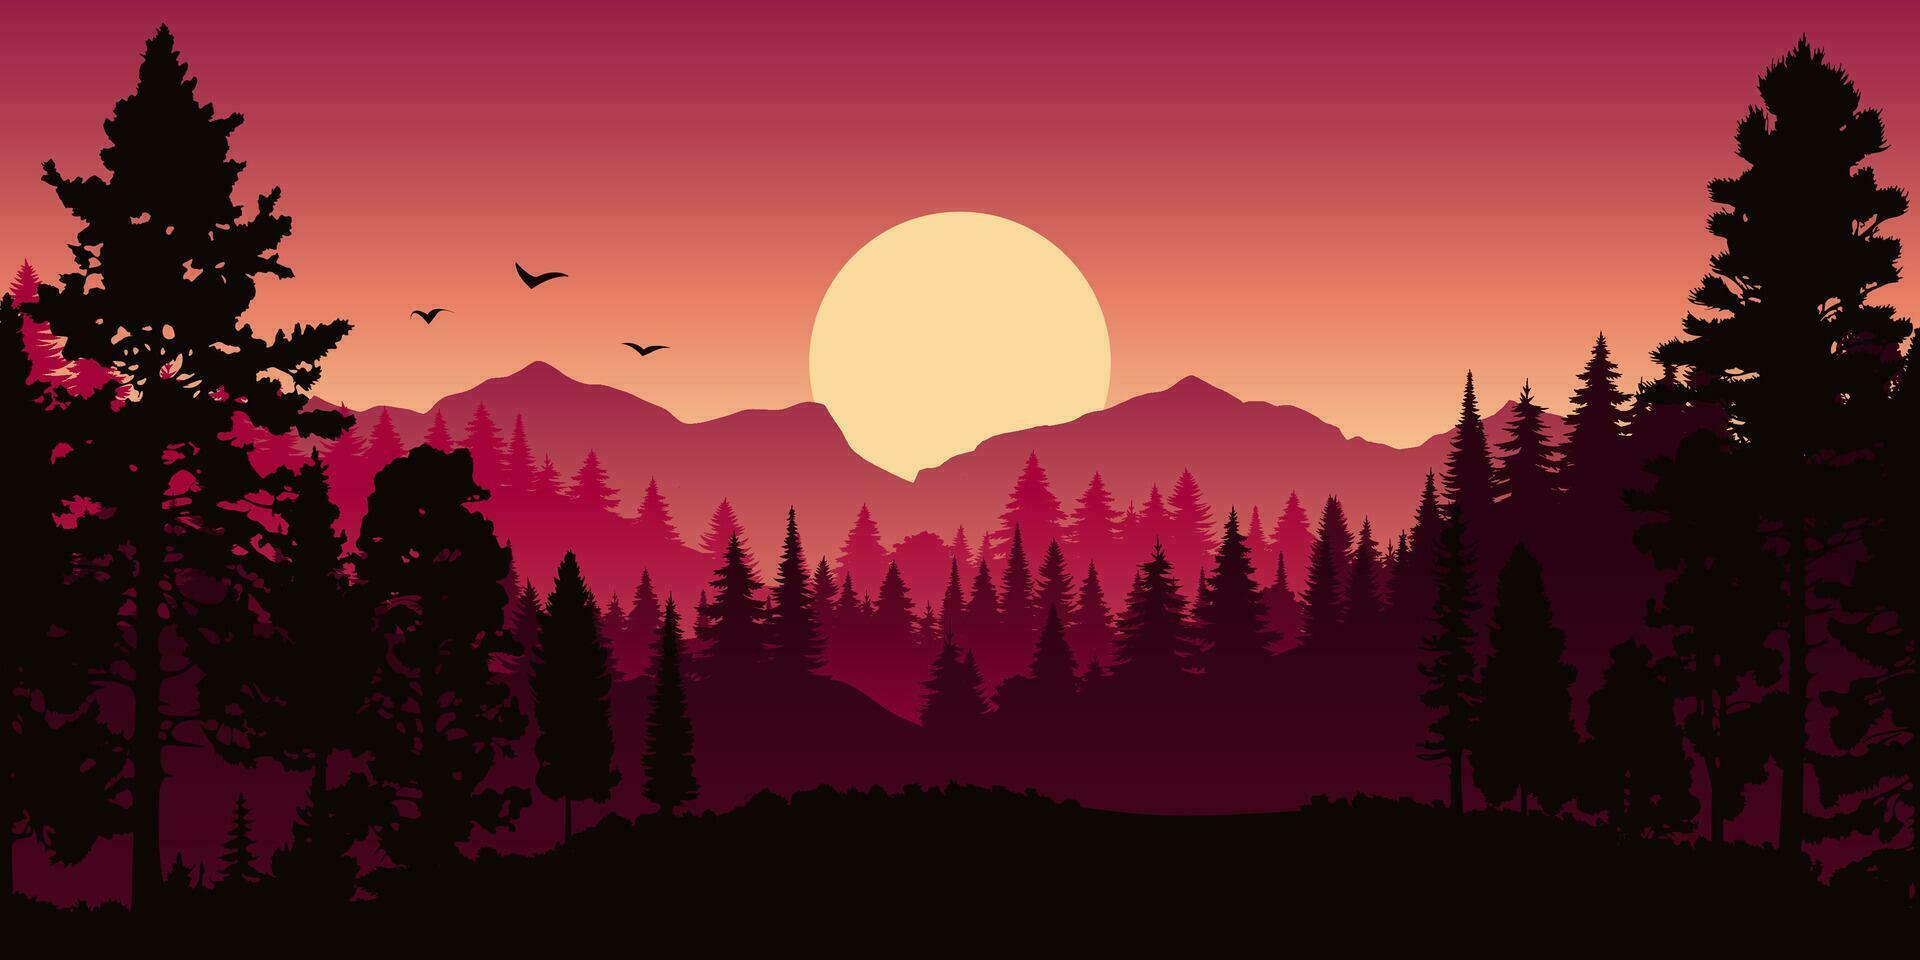 paysage horizontal rouge vectoriel avec brouillard, forêt, épinette, sapin et coucher de soleil. illustration d'automne de la silhouette de la vue panoramique, de la brume et des montagnes oranges. arbres de la saison d'automne.